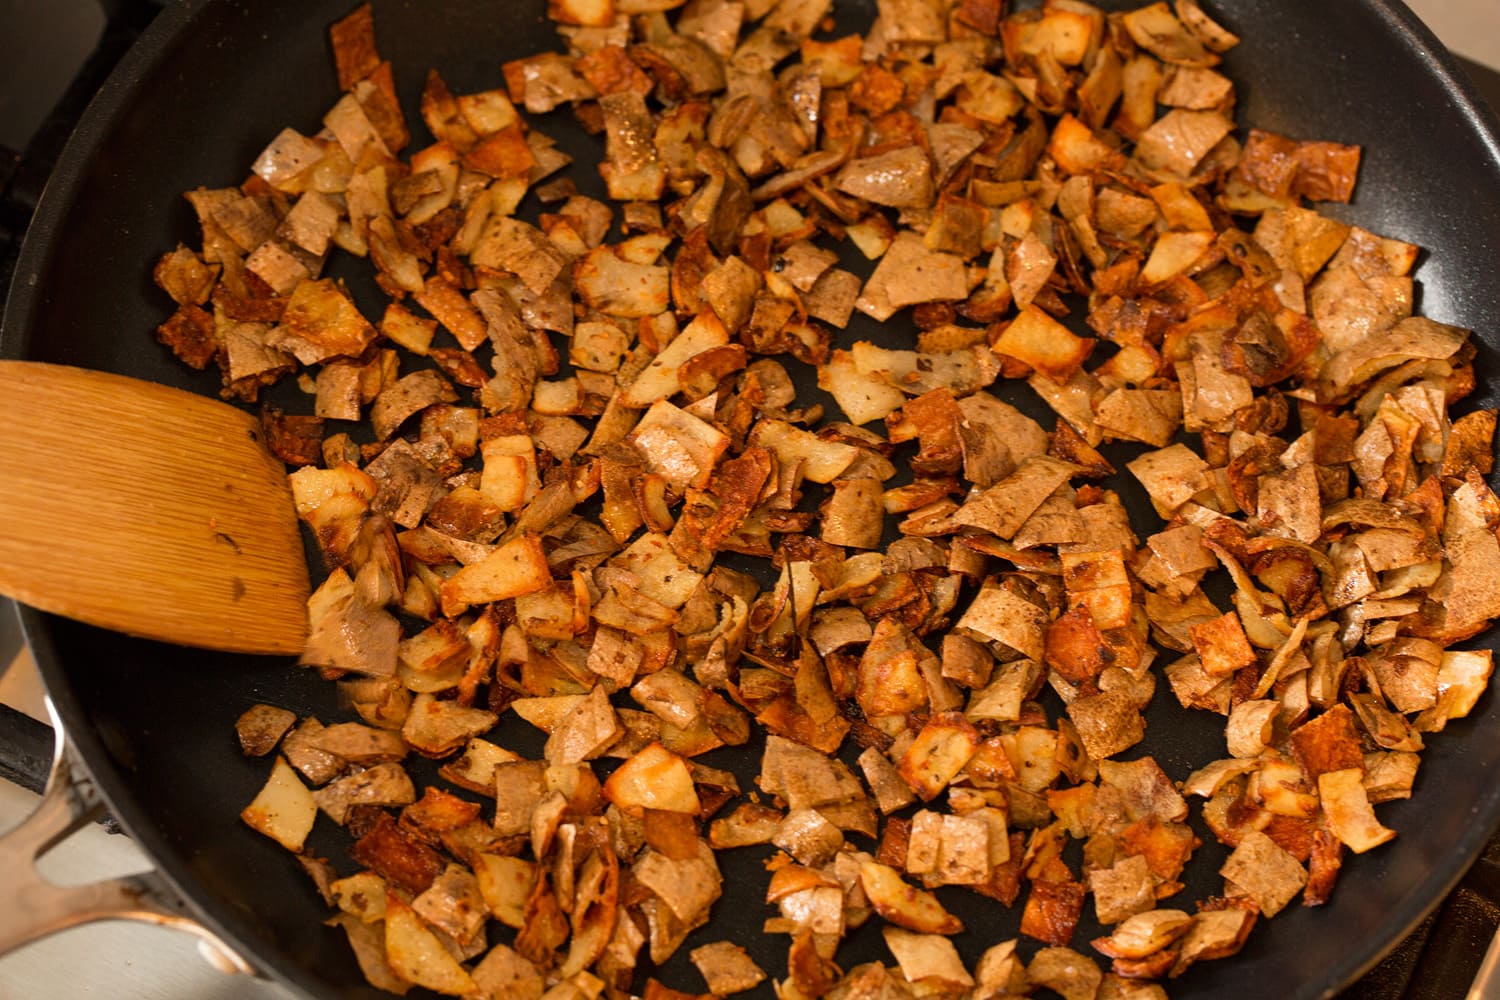 Crispy fried potato skins in skillet.